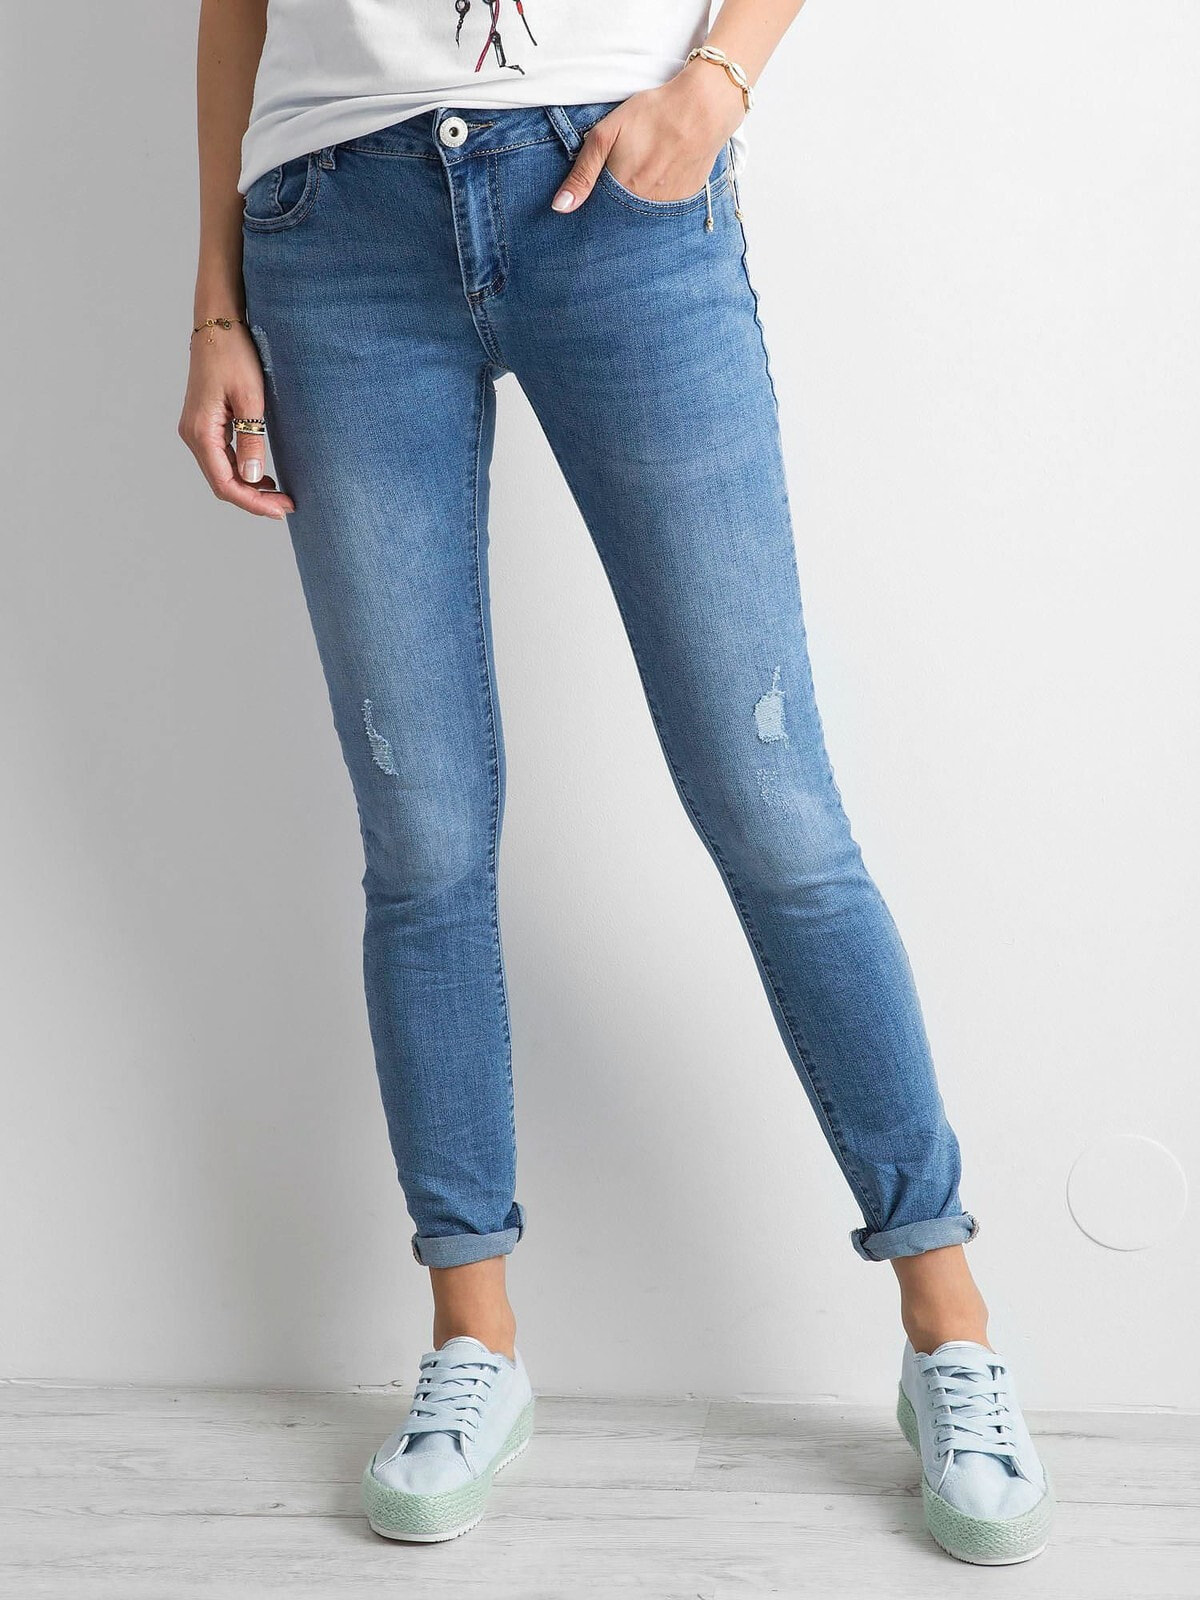 Женские джинсы скинни с низкой посадкой укороченные голубые Factory Price